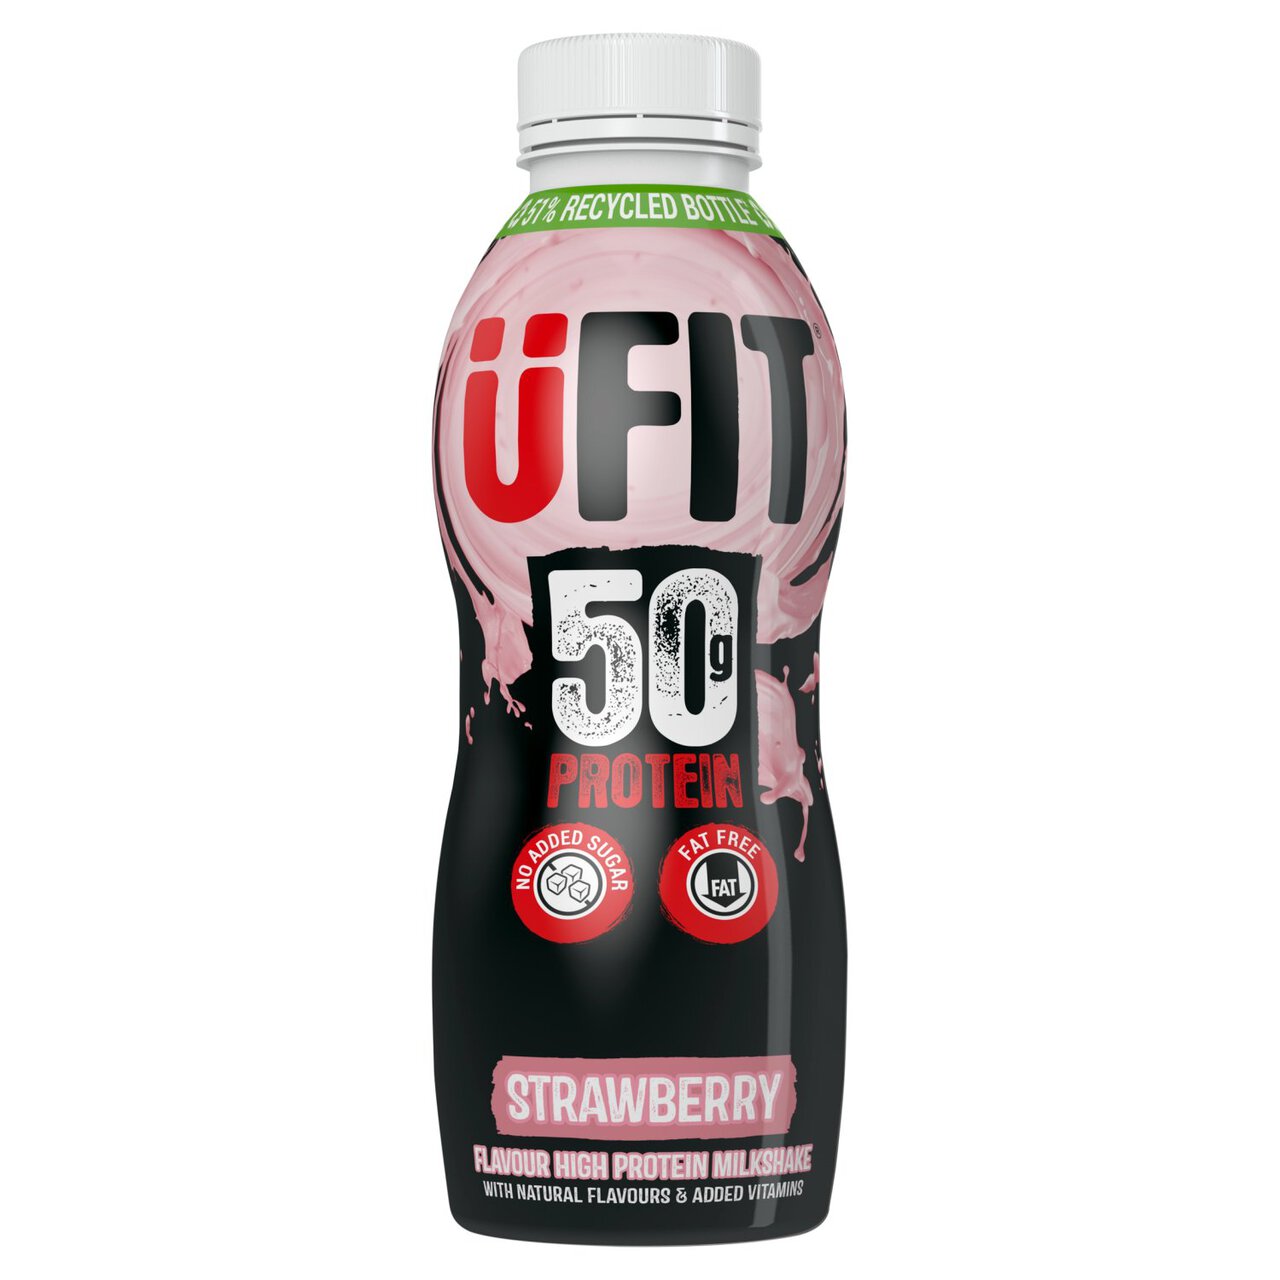 UFIT Strawberry 50g Protein Milkshake 500ml